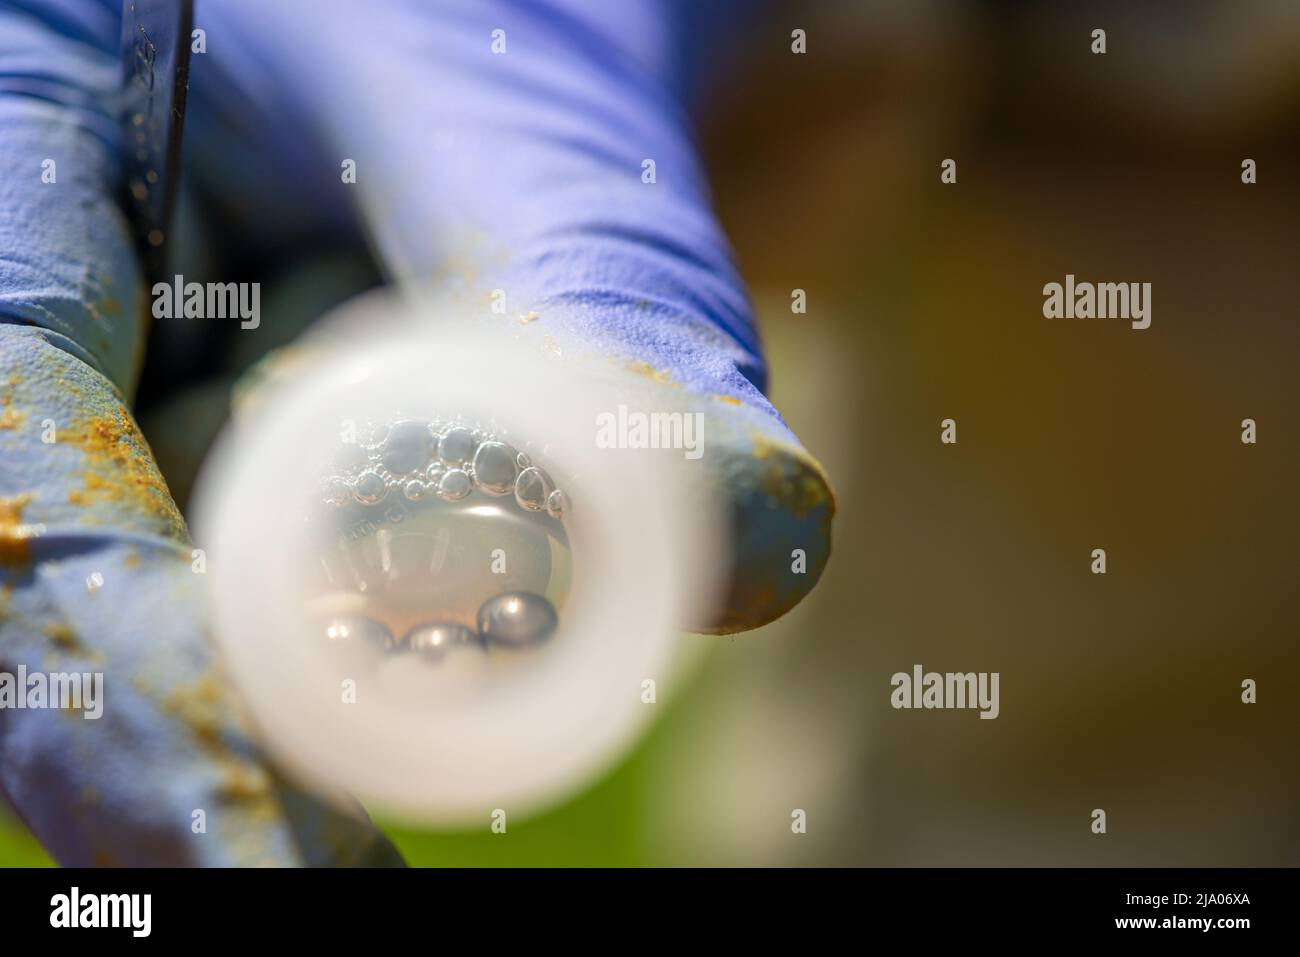 Apicoltore estraente larva da utilizzare in vita foulbrood kit di test diagnostico per la malattia di foulbrood europea, Galles del Sud, Regno Unito Foto Stock